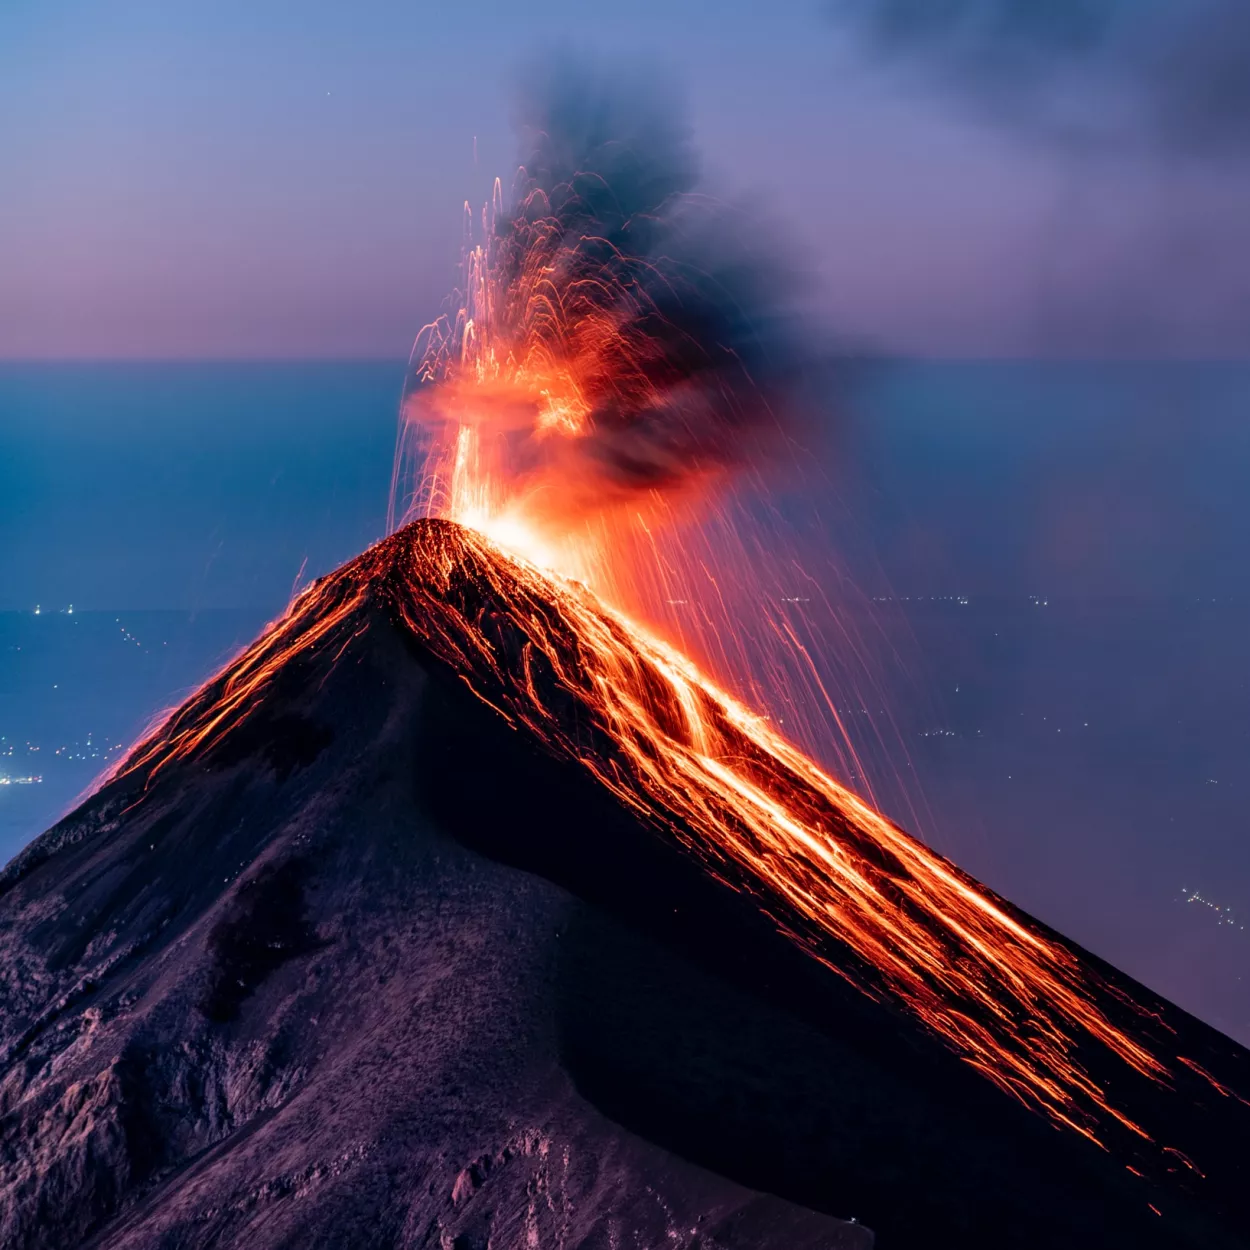 A volcano exploding